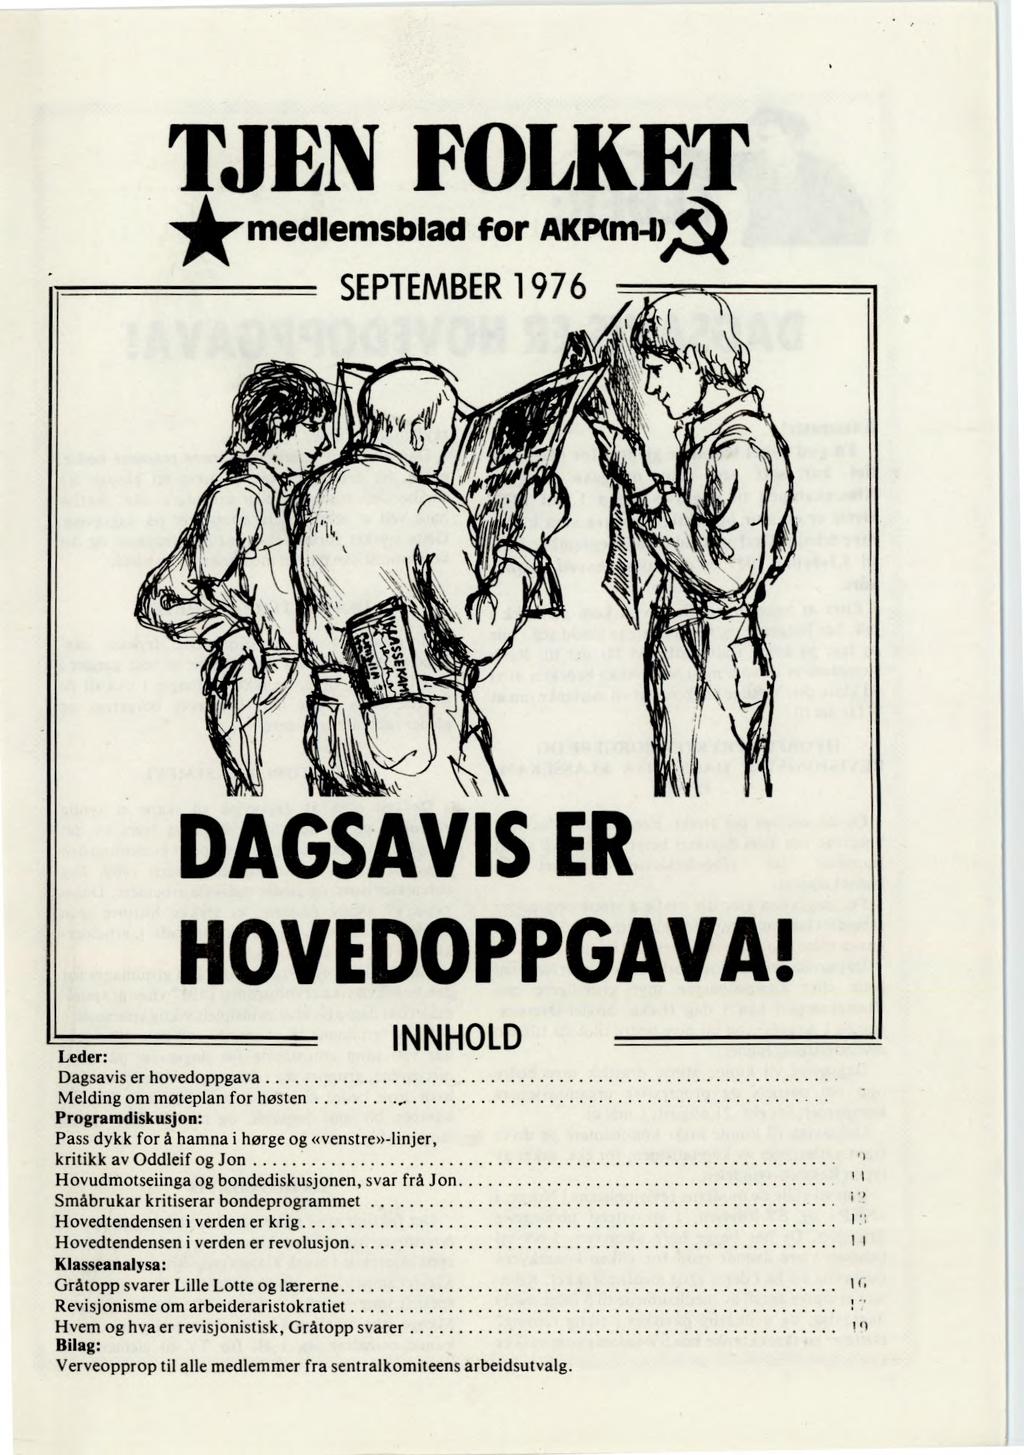 TJEN FOLKET medlemsblad for AKINm-IA SEPTEMBER 1976 DAGSAVIS ER HOVEDOPPGAVA!